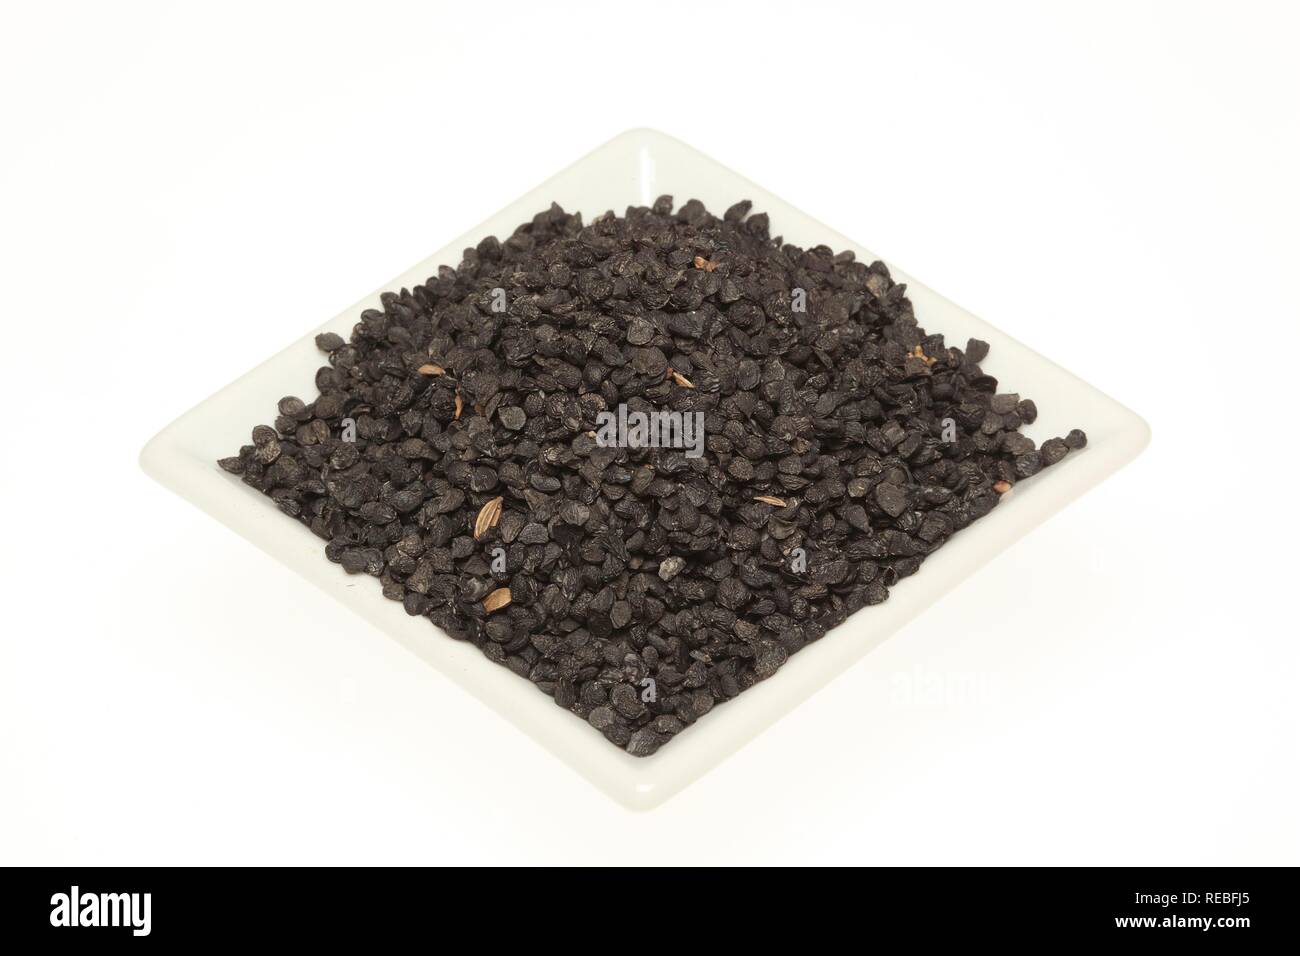 Semence de l'ail ou ciboulette poireaux chinois (Allium tuberosum), utilisées à des fins médicinales et comme épice cuisine Banque D'Images